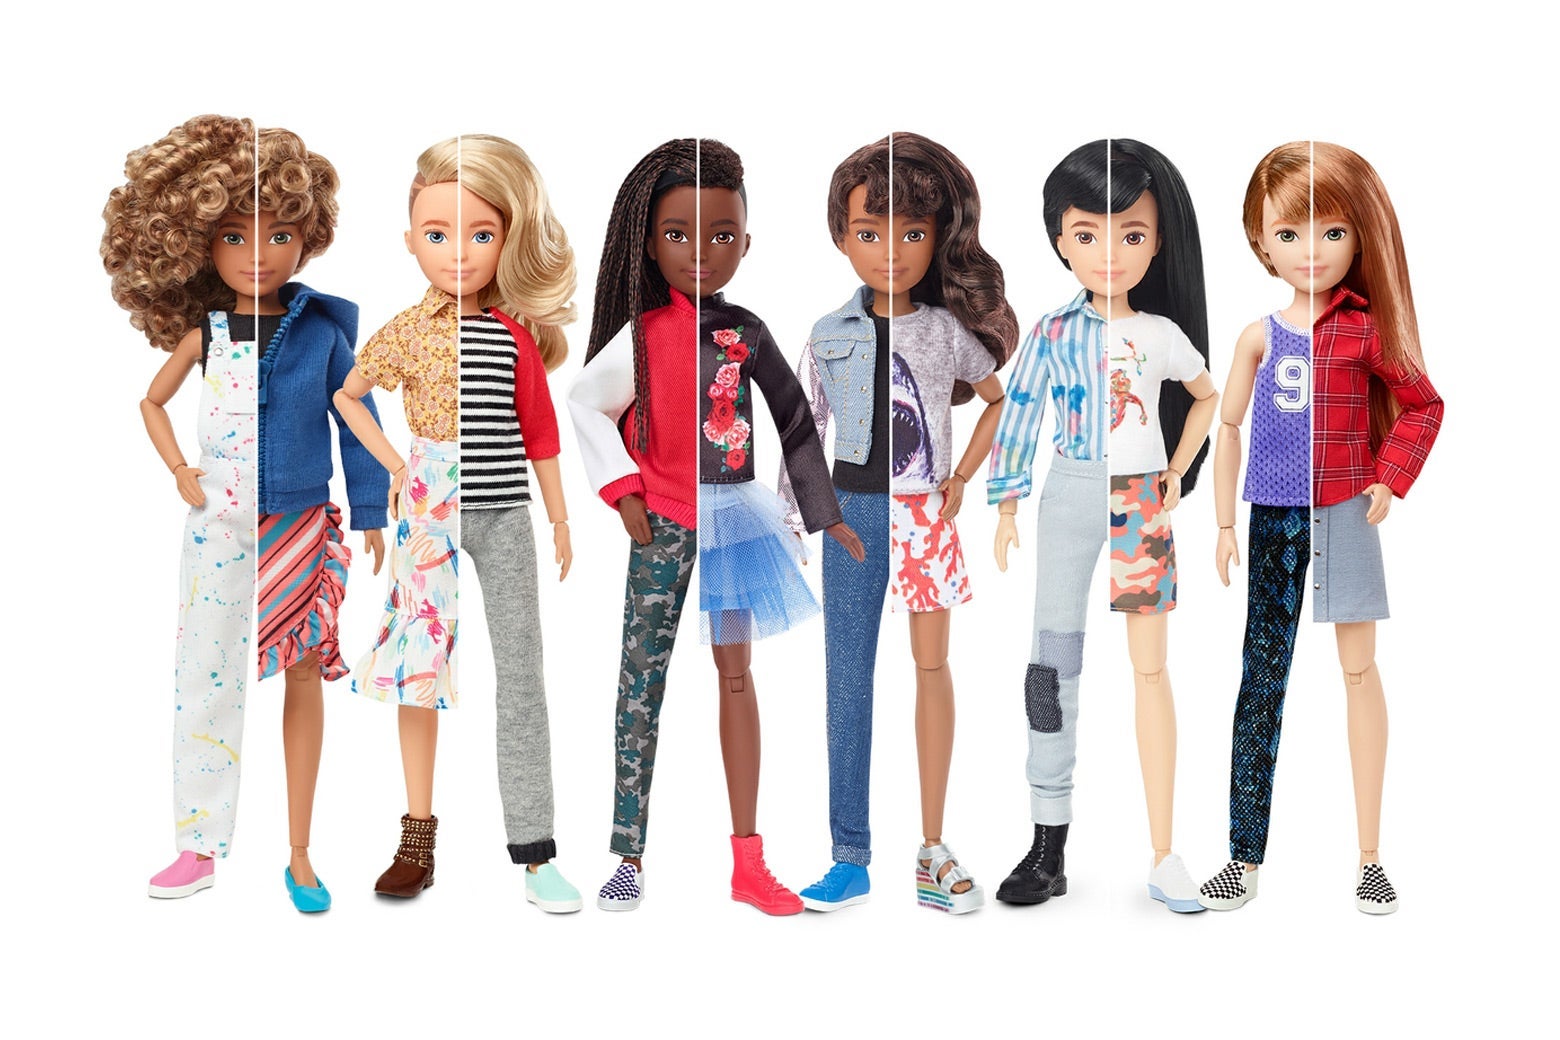 Mattel's “gender-neutral” dolls 